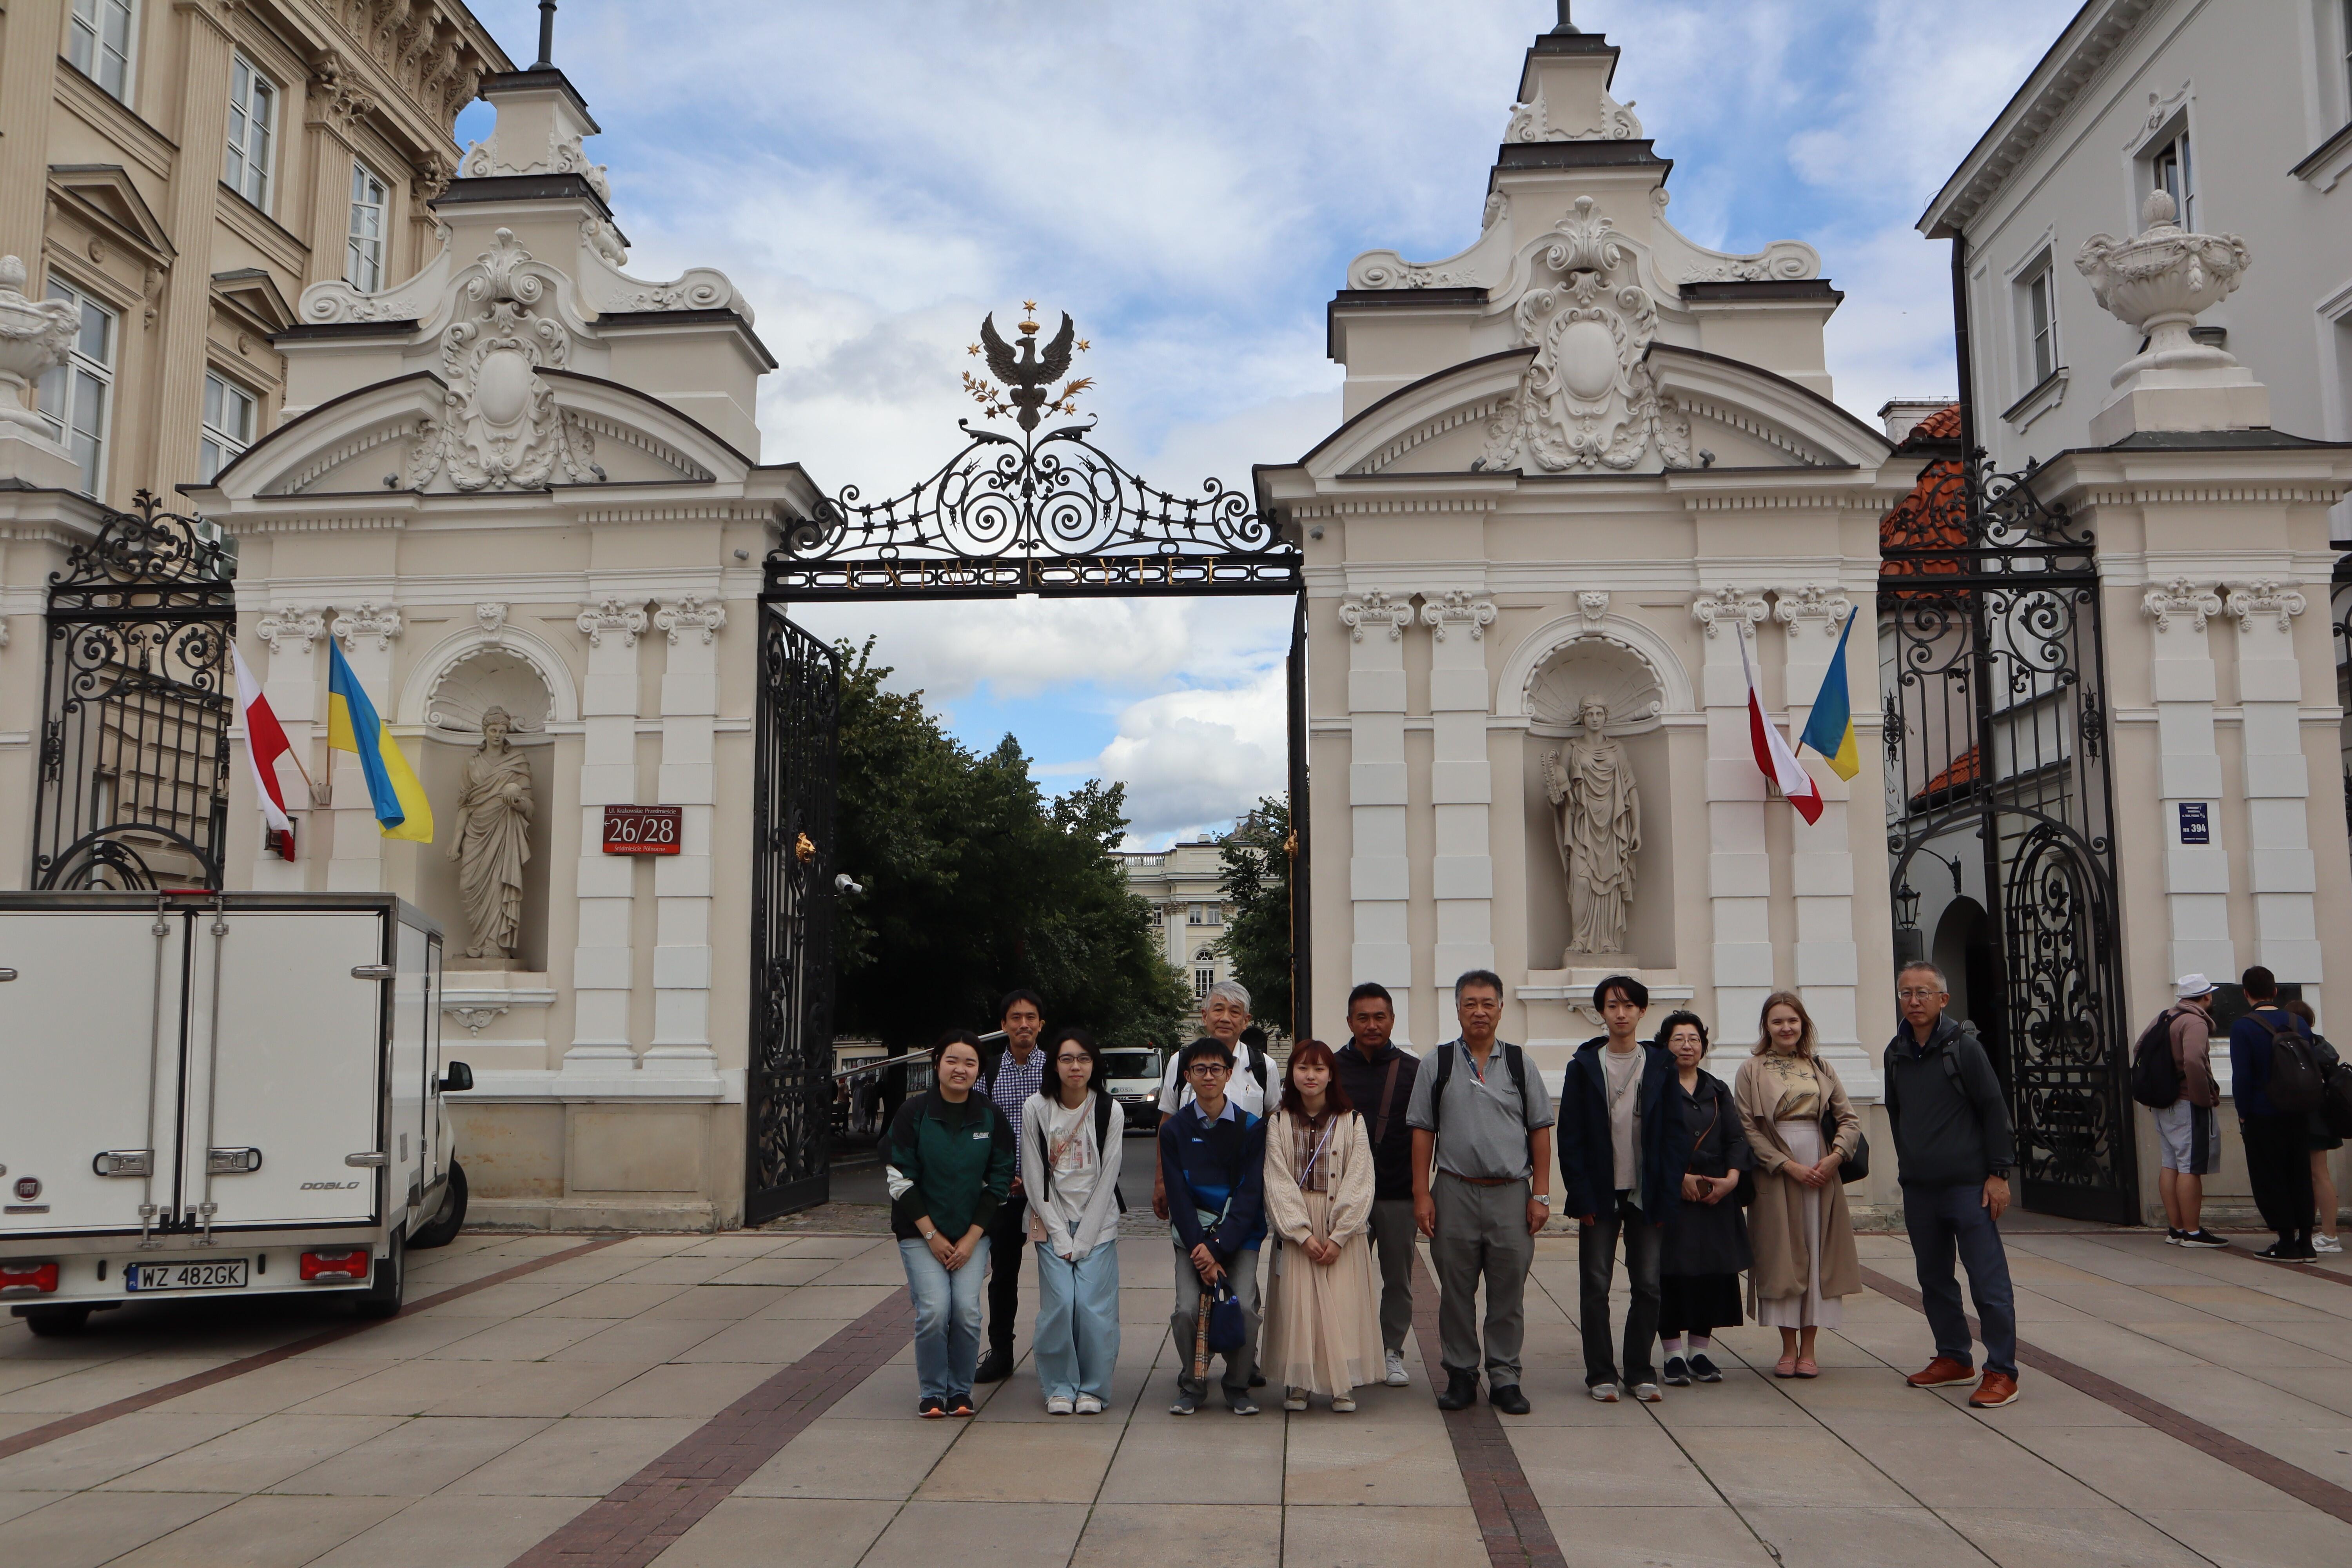 ワルシャワ大学の門の前で記念撮影